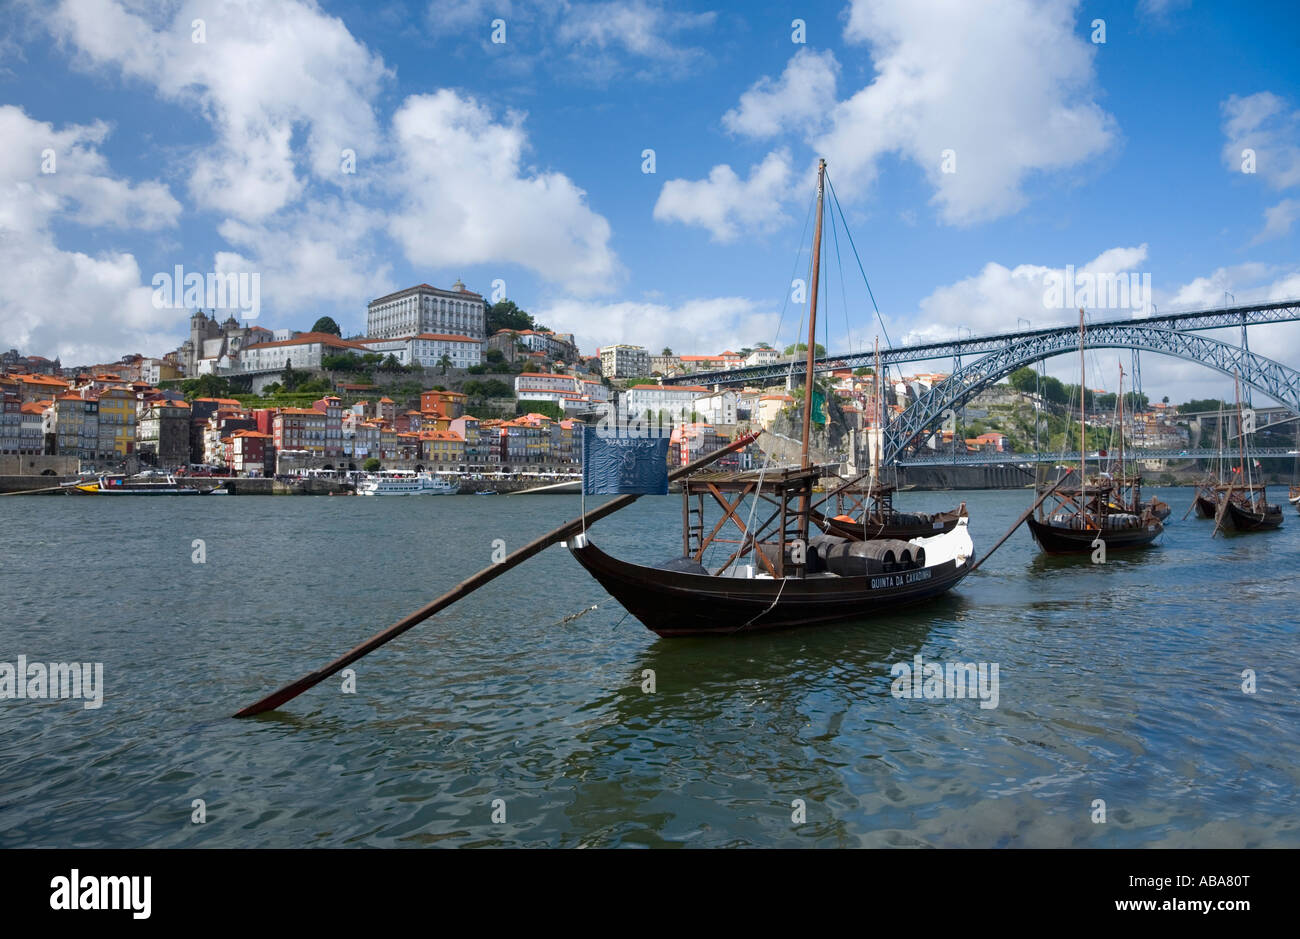 Barcos rabelos barges traditionnelles pour le transport du vin sur le fleuve Douro Porto Portugal Banque D'Images